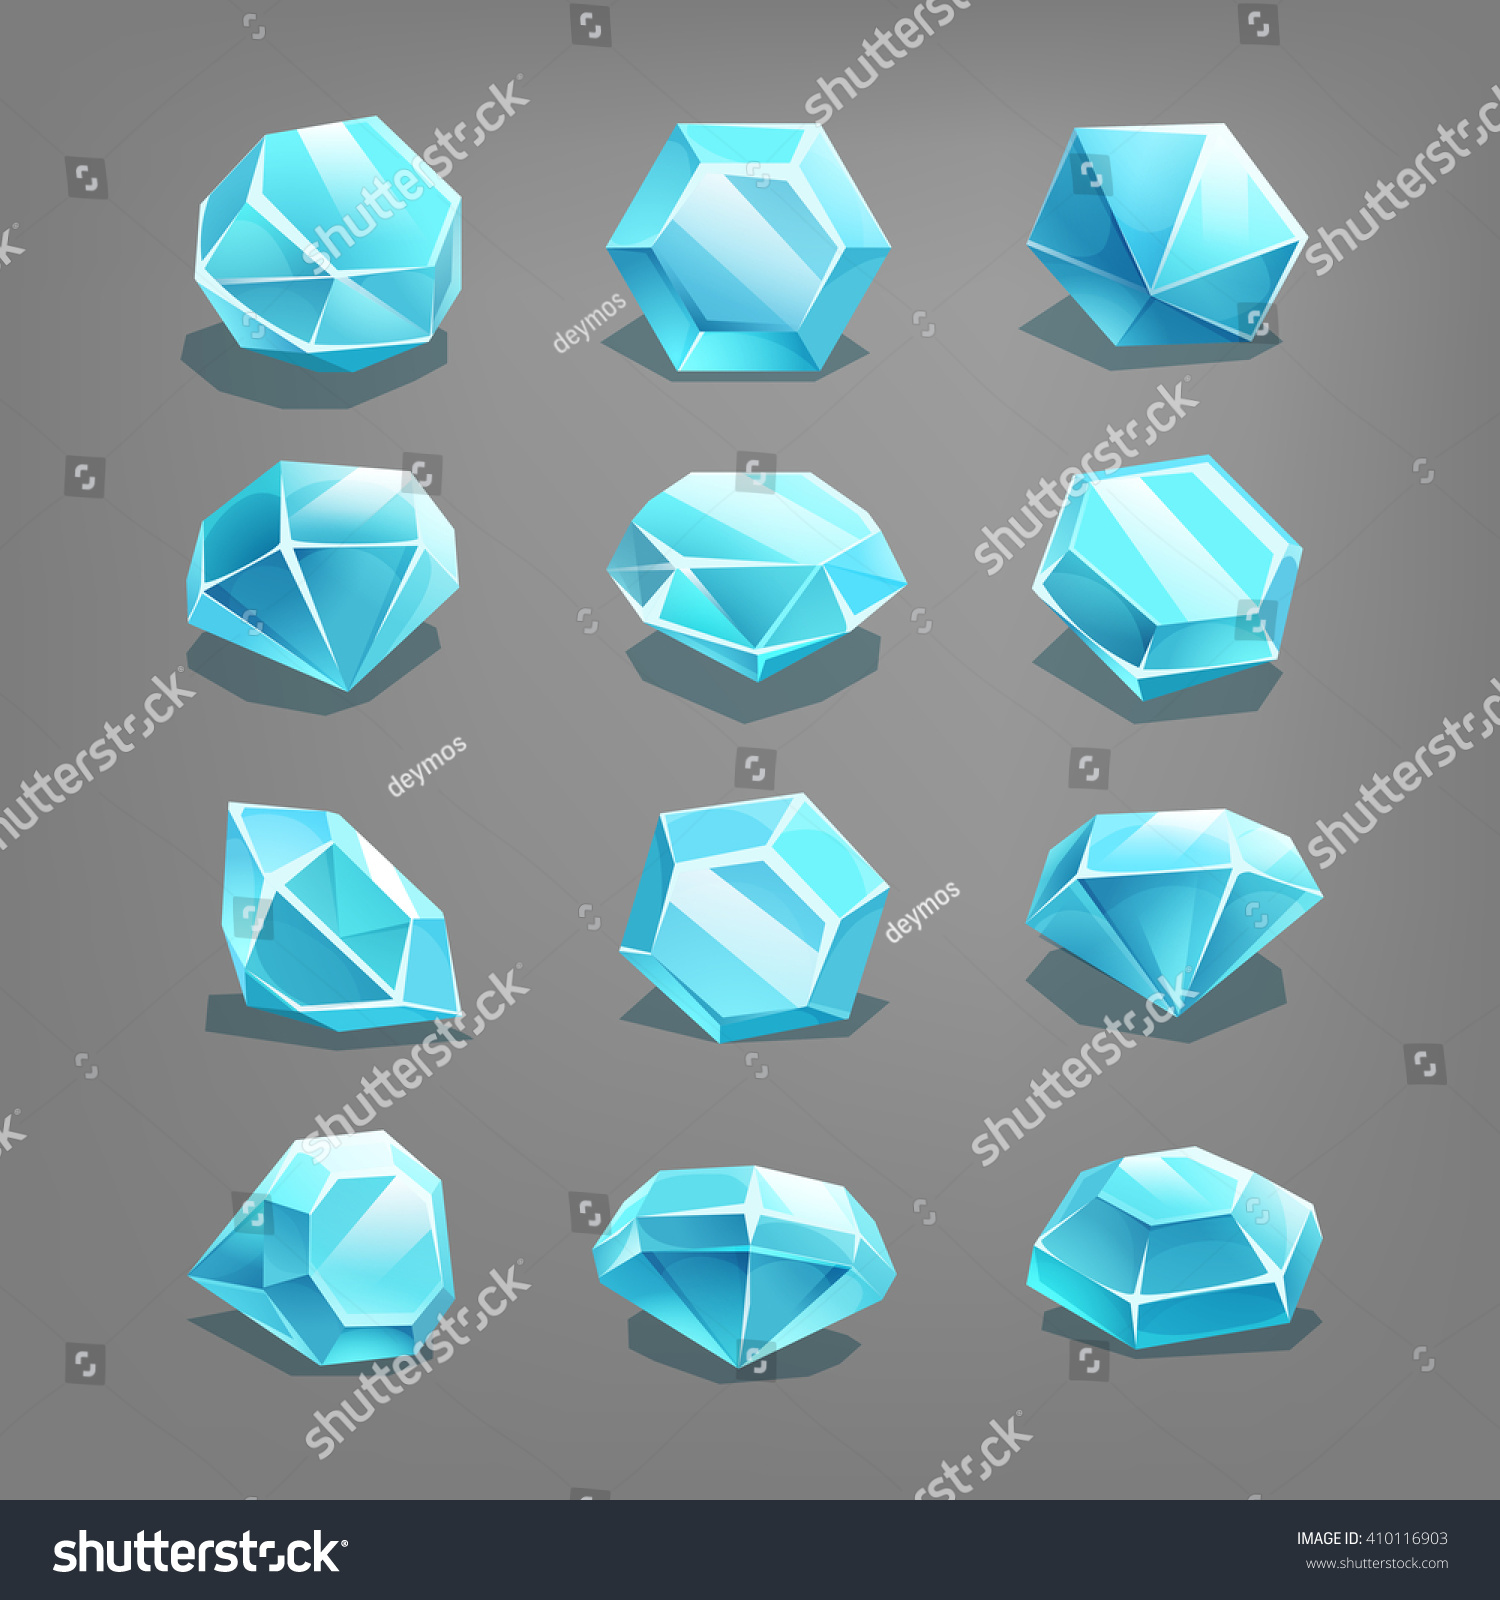 Set Of Cartoon Gems. Vector Illustration. - 410116903 : Shutterstock